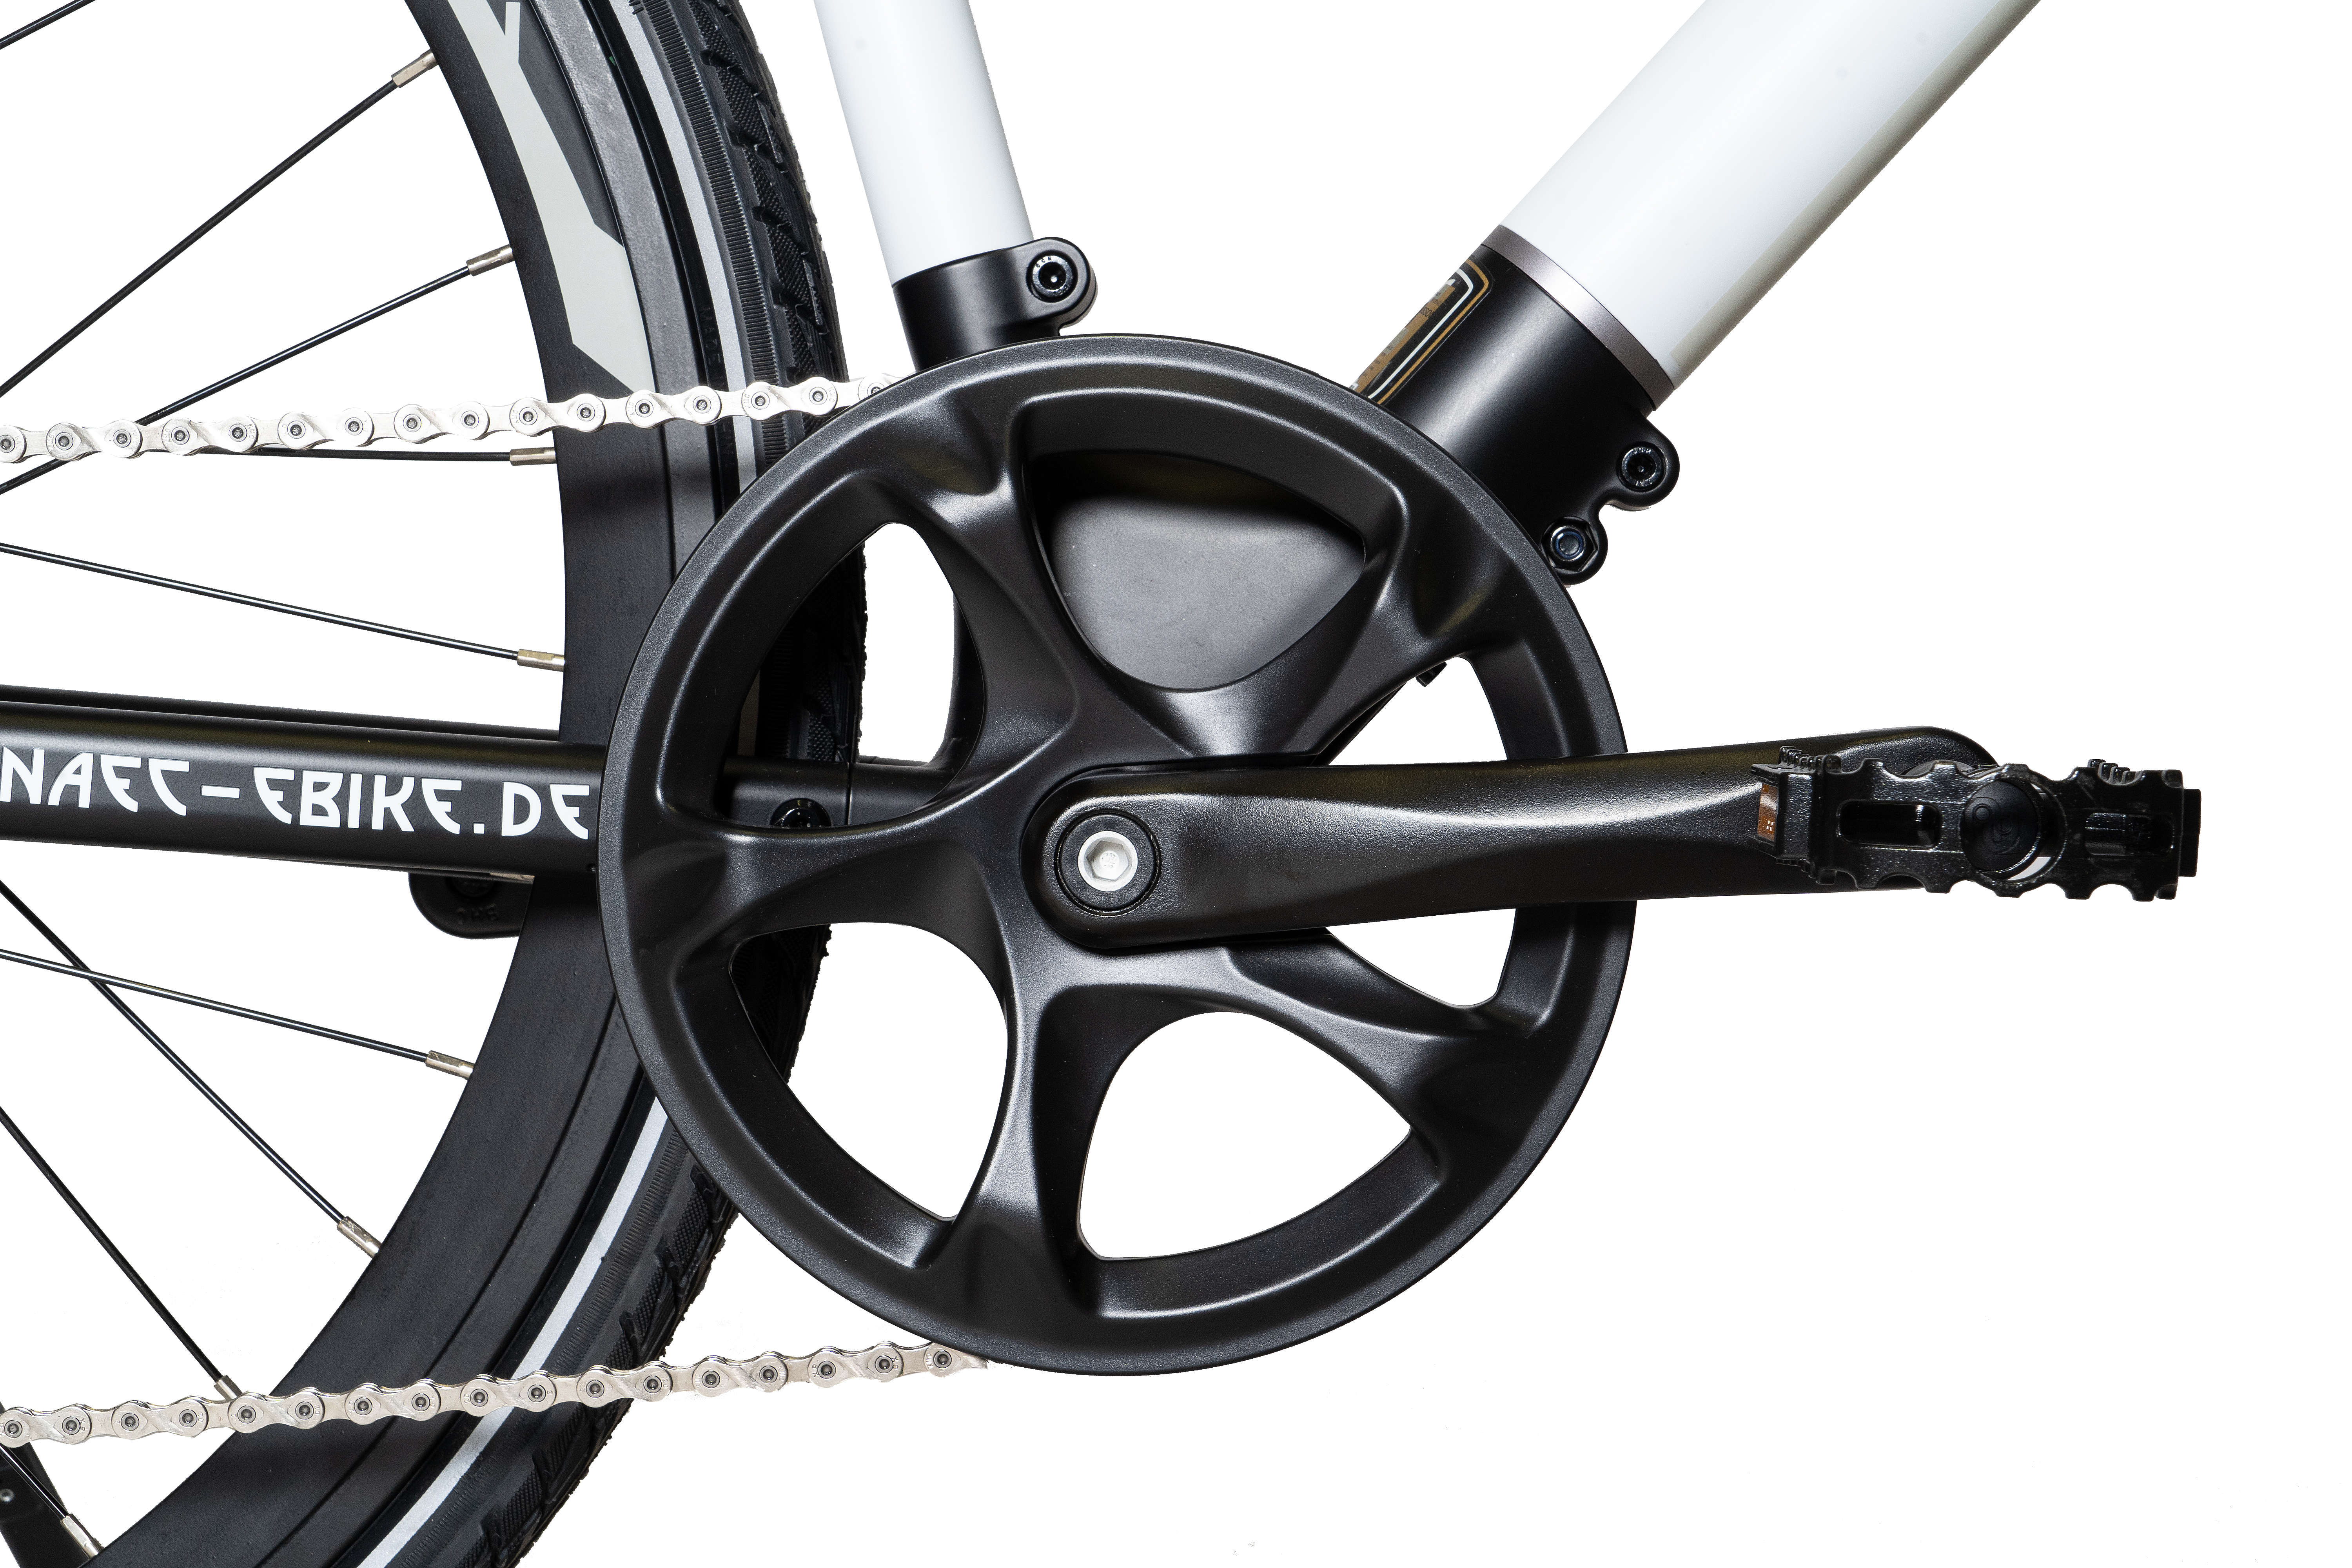 NAEC 28 Zoll eTWO Kettenantrieb (Laufradgröße: weiß) schwarz weiss Citybike Modular schwarz Unisex-Rad, Rahmenhöhe: Zoll, 28 280, 53 cm